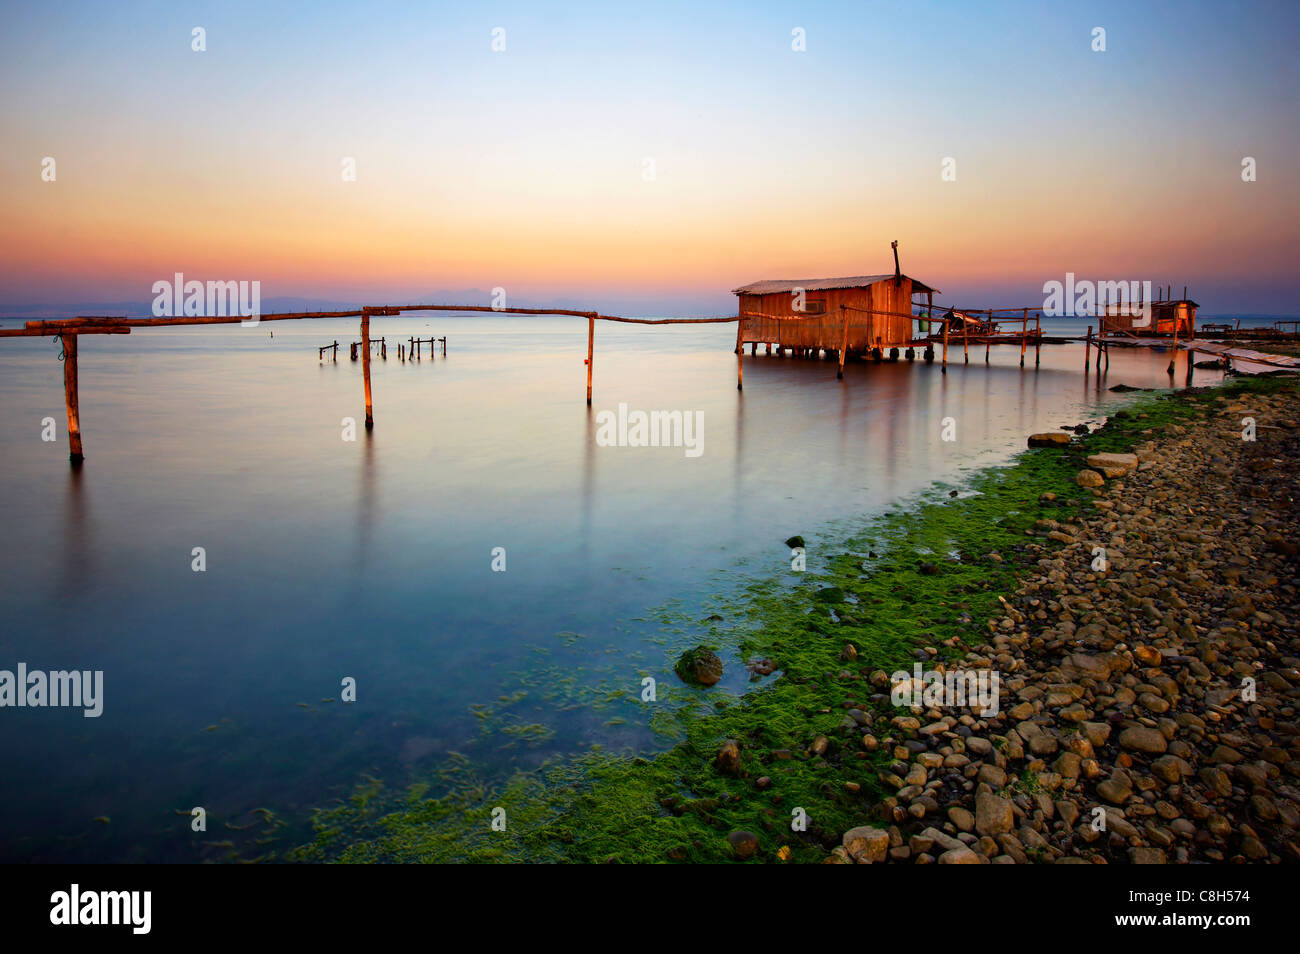 Stelzen-Hütte im Delta des Axios (auch bekannt als "Vardaris") Fluss, Thessaloniki, Makedonien, Griechenland Stockfoto